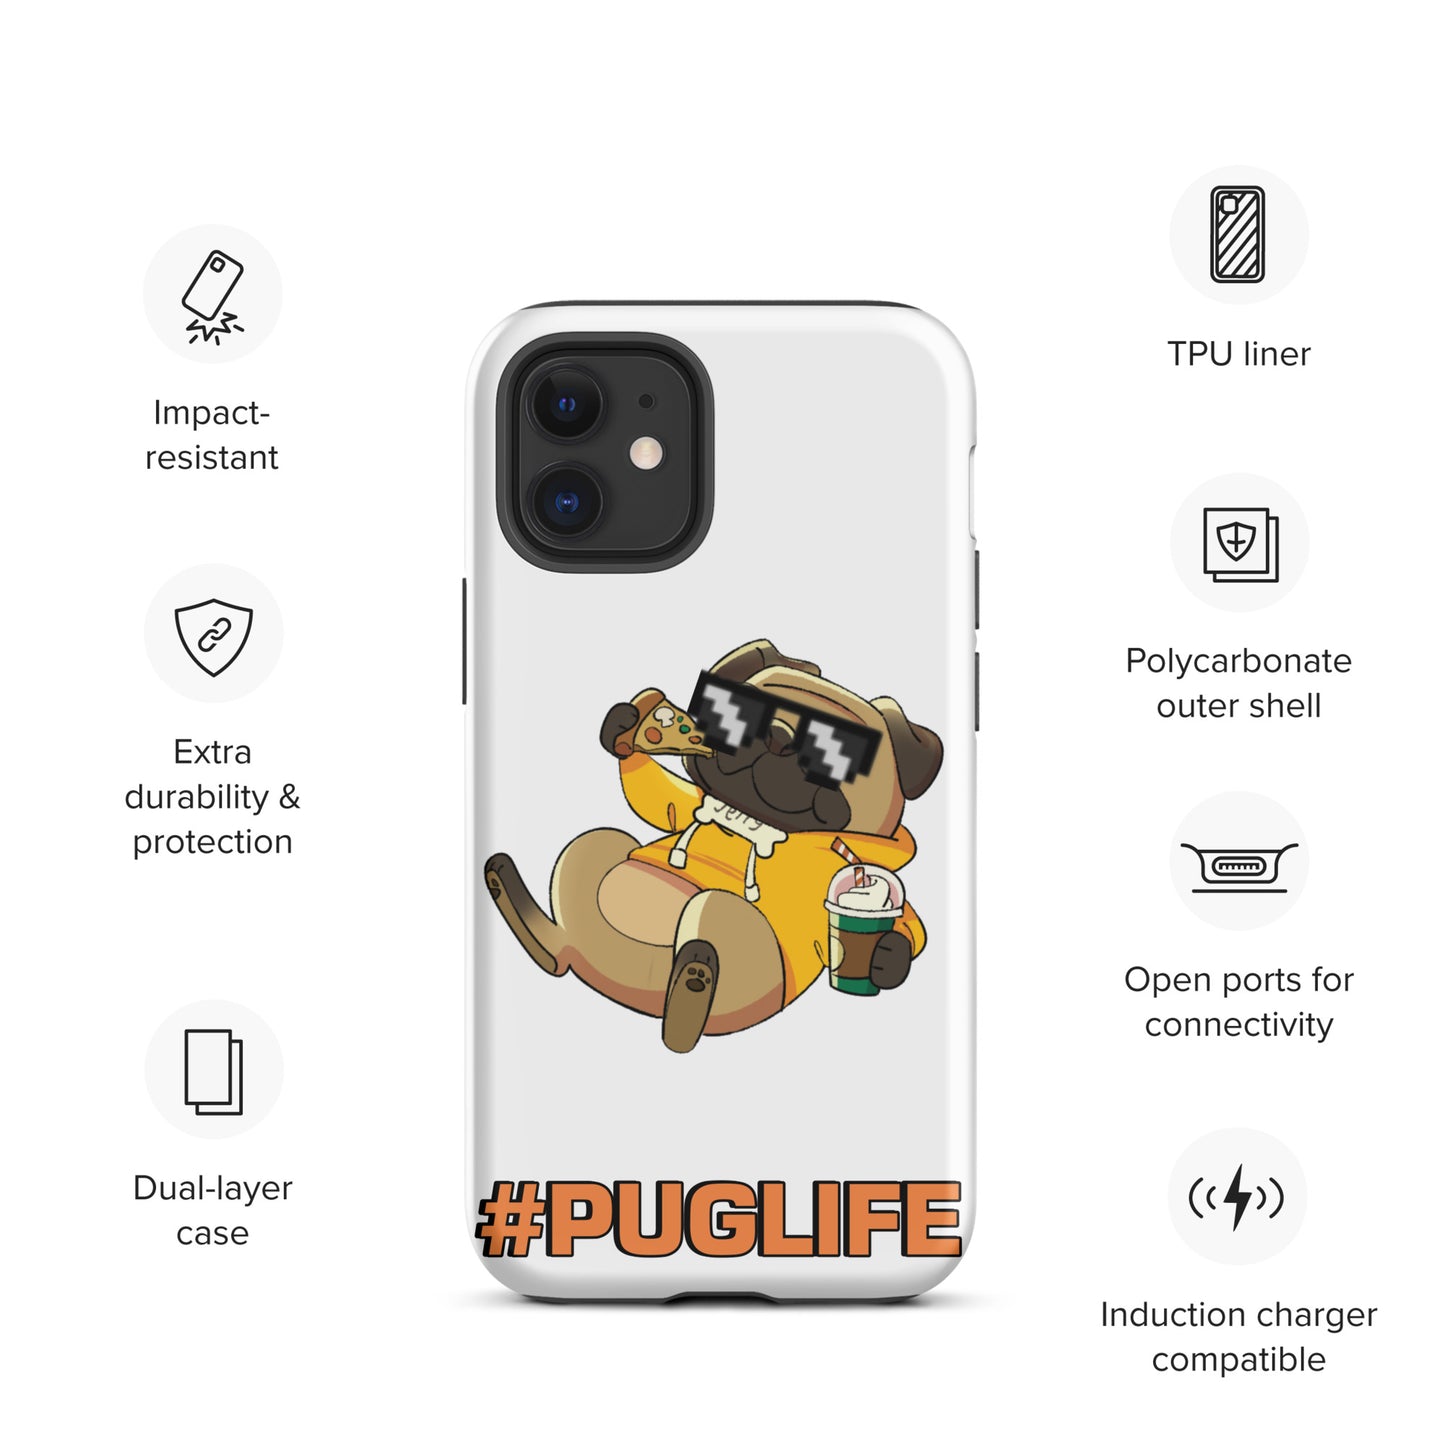 #PUGLIFE IPhone Case